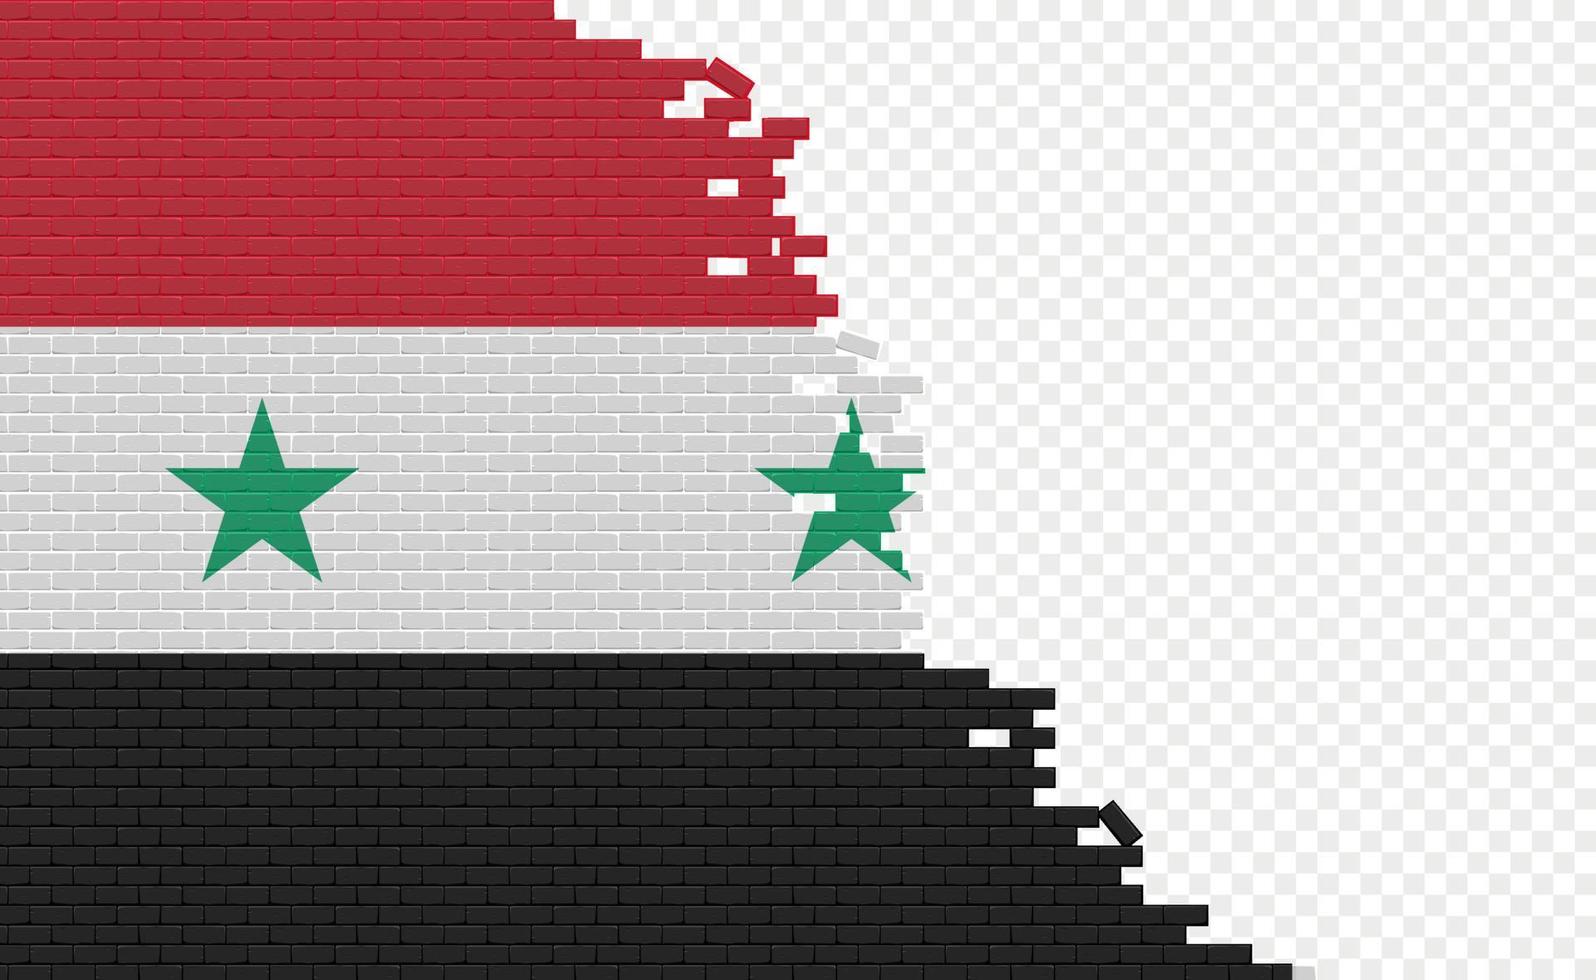 syrien flagga på bruten tegel vägg. tömma flagga fält av annan Land. Land jämförelse. lätt redigering och vektor i grupper.